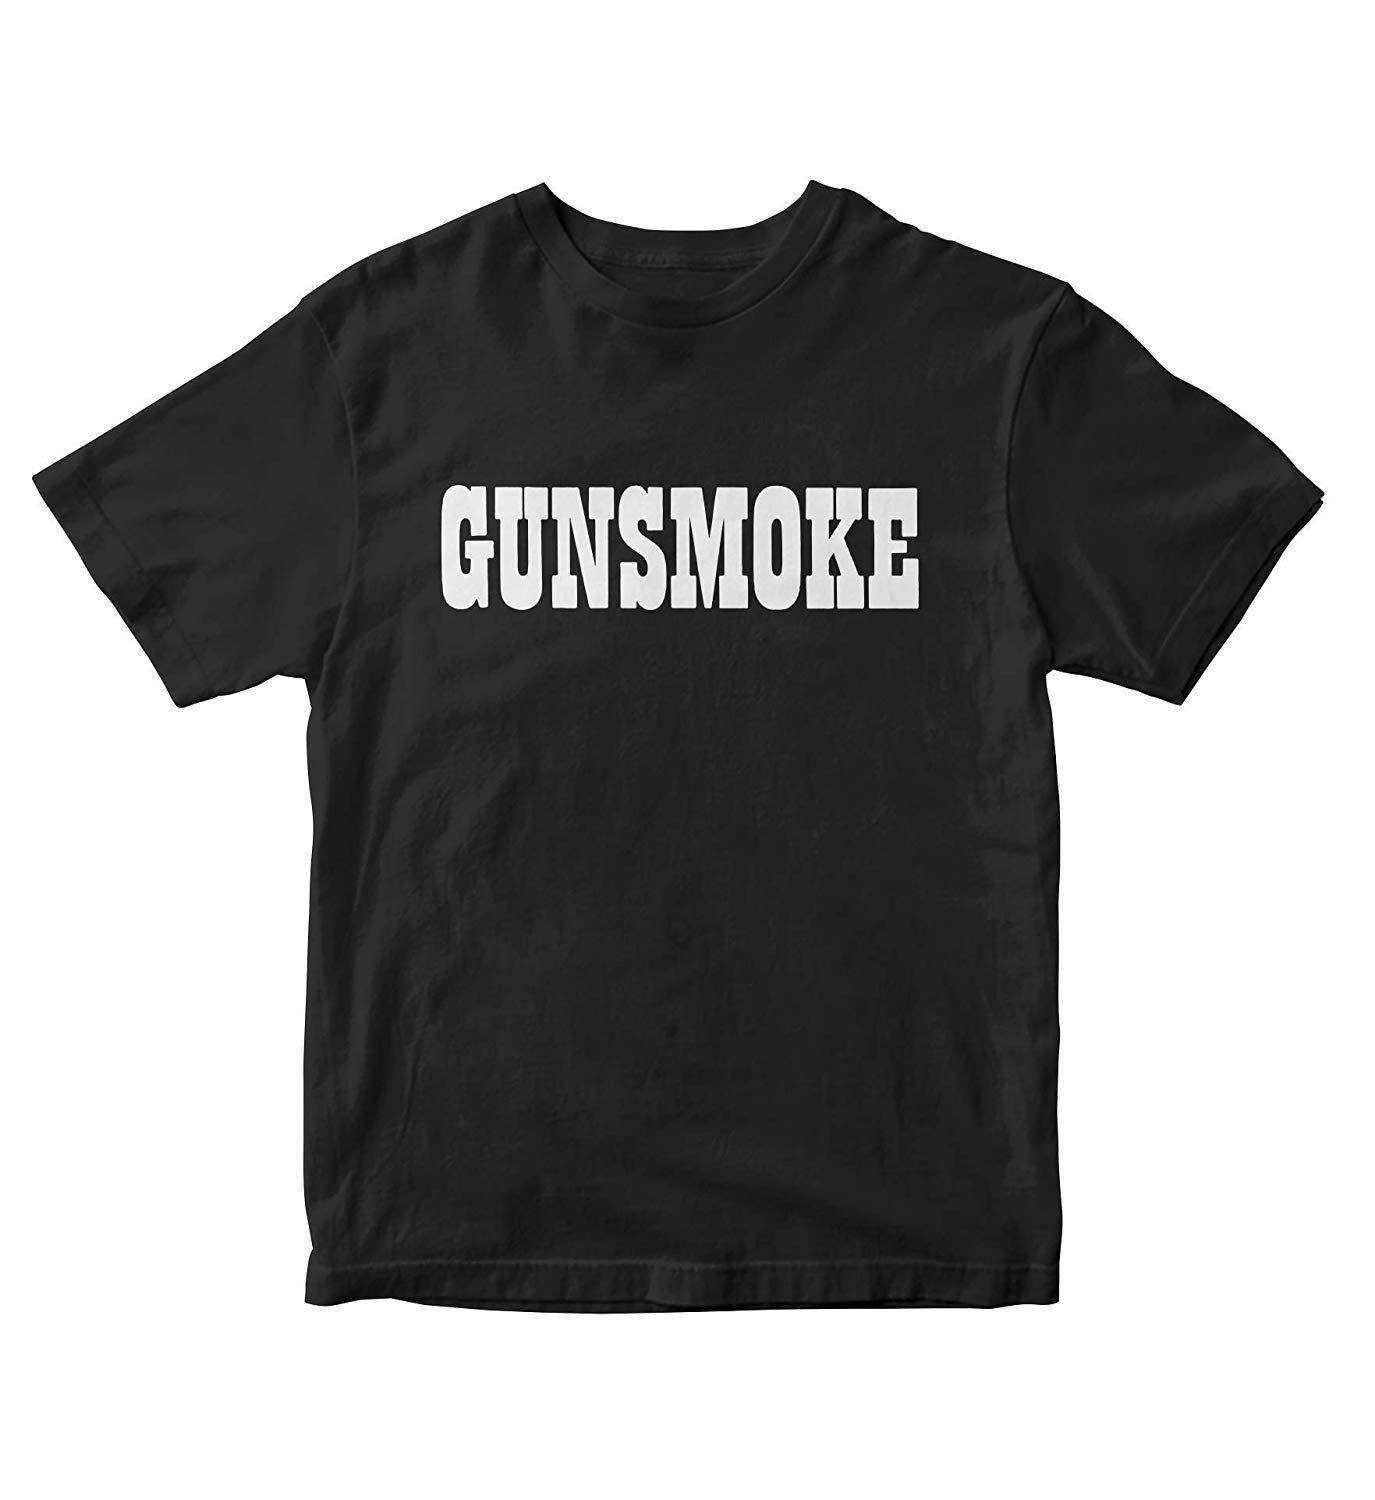 Gunsmoke Logo - TJSPORTS Gunsmoke Logo T Shirt Adult Sizes TV Show M140 at Amazon